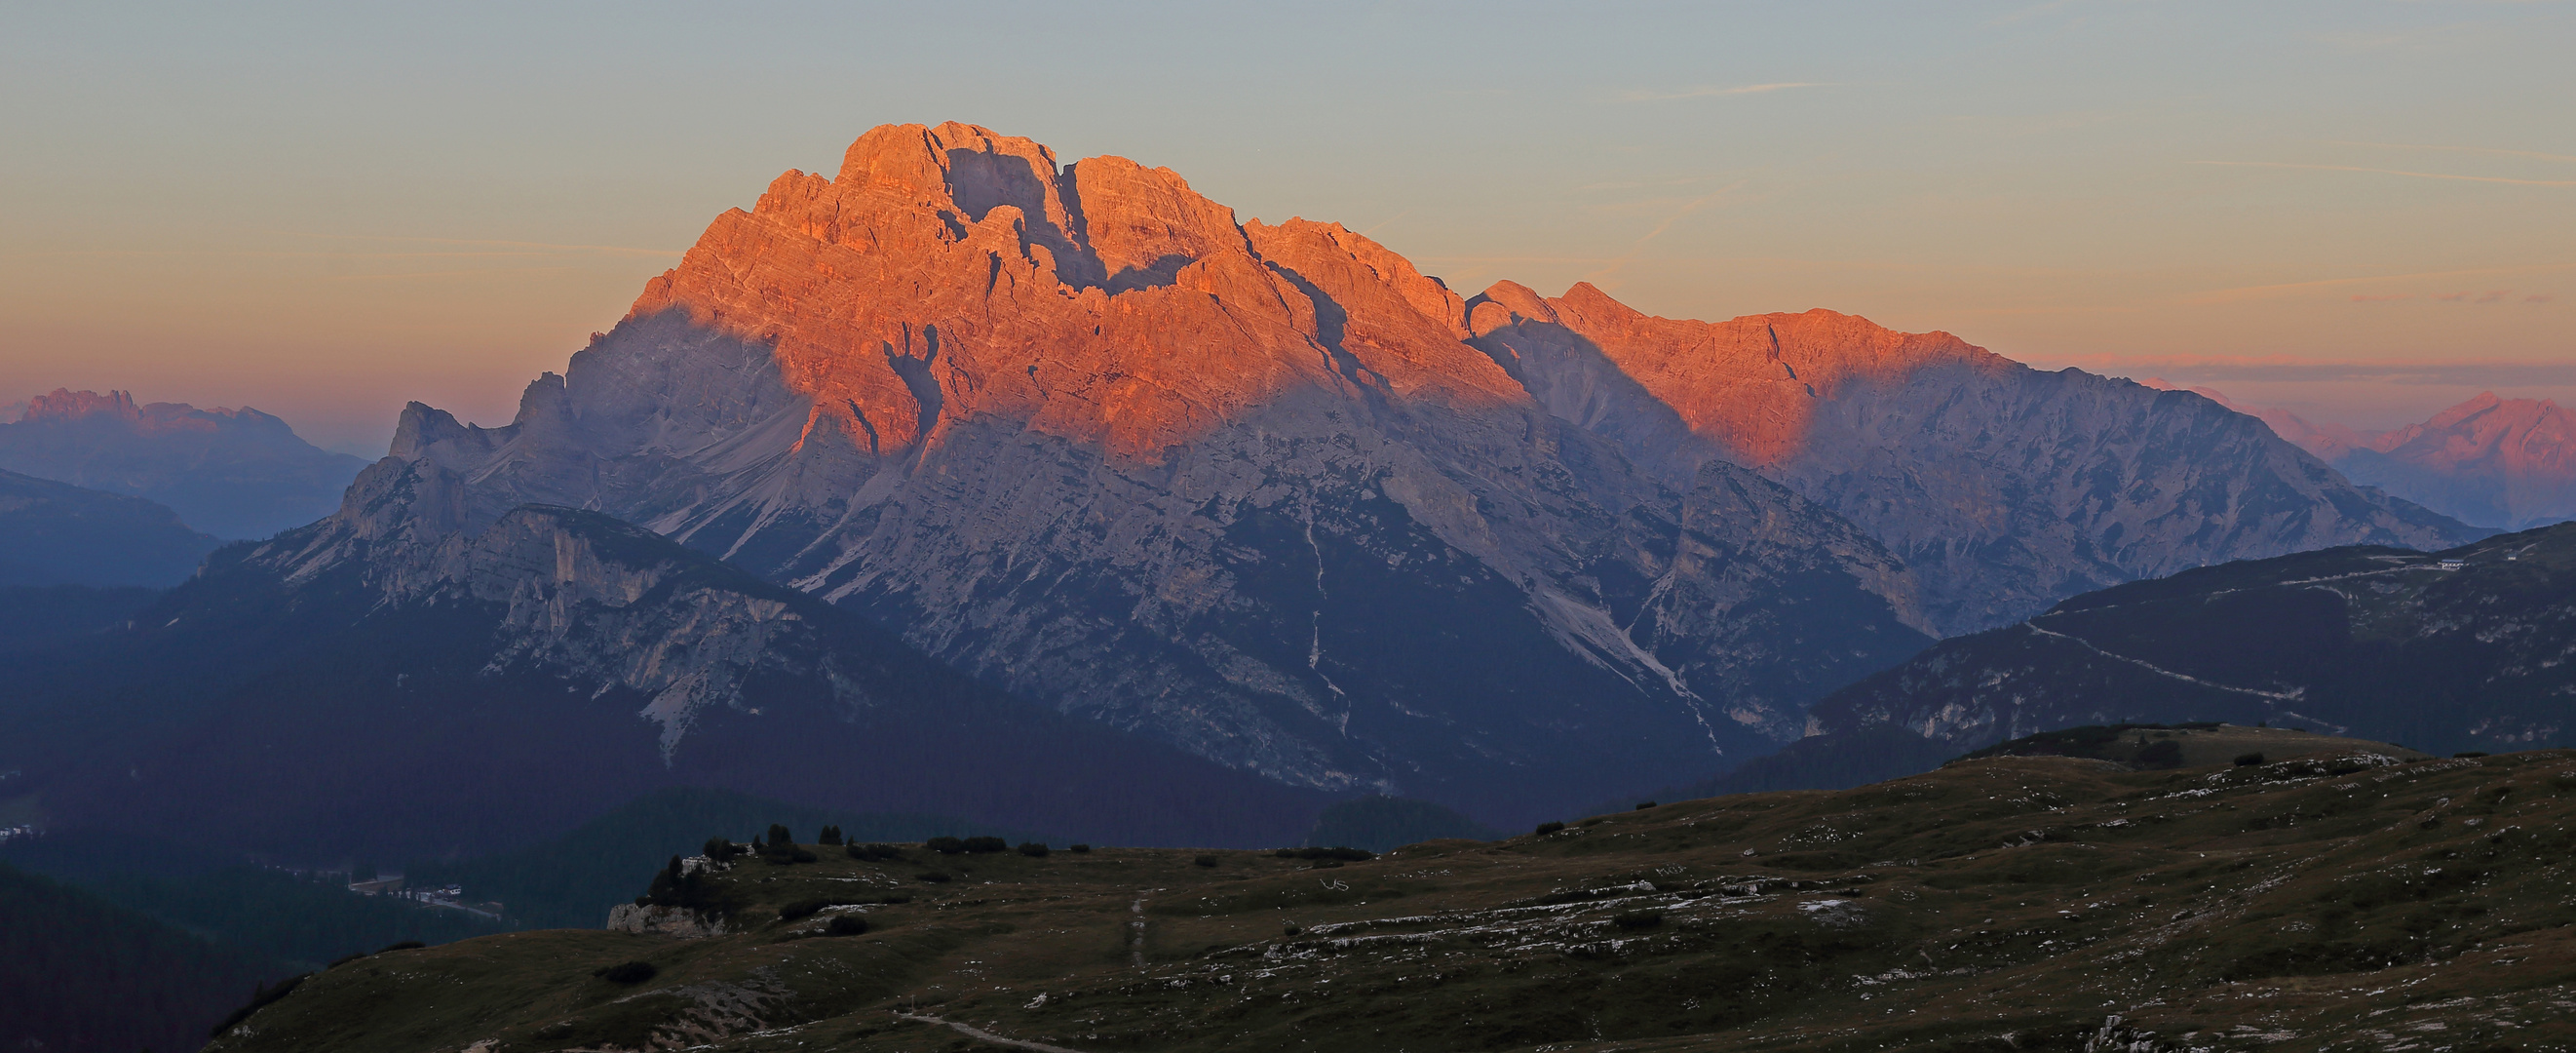 Hoch über Cortina d Ampezo thront der berühmte Monte Cristallo,...